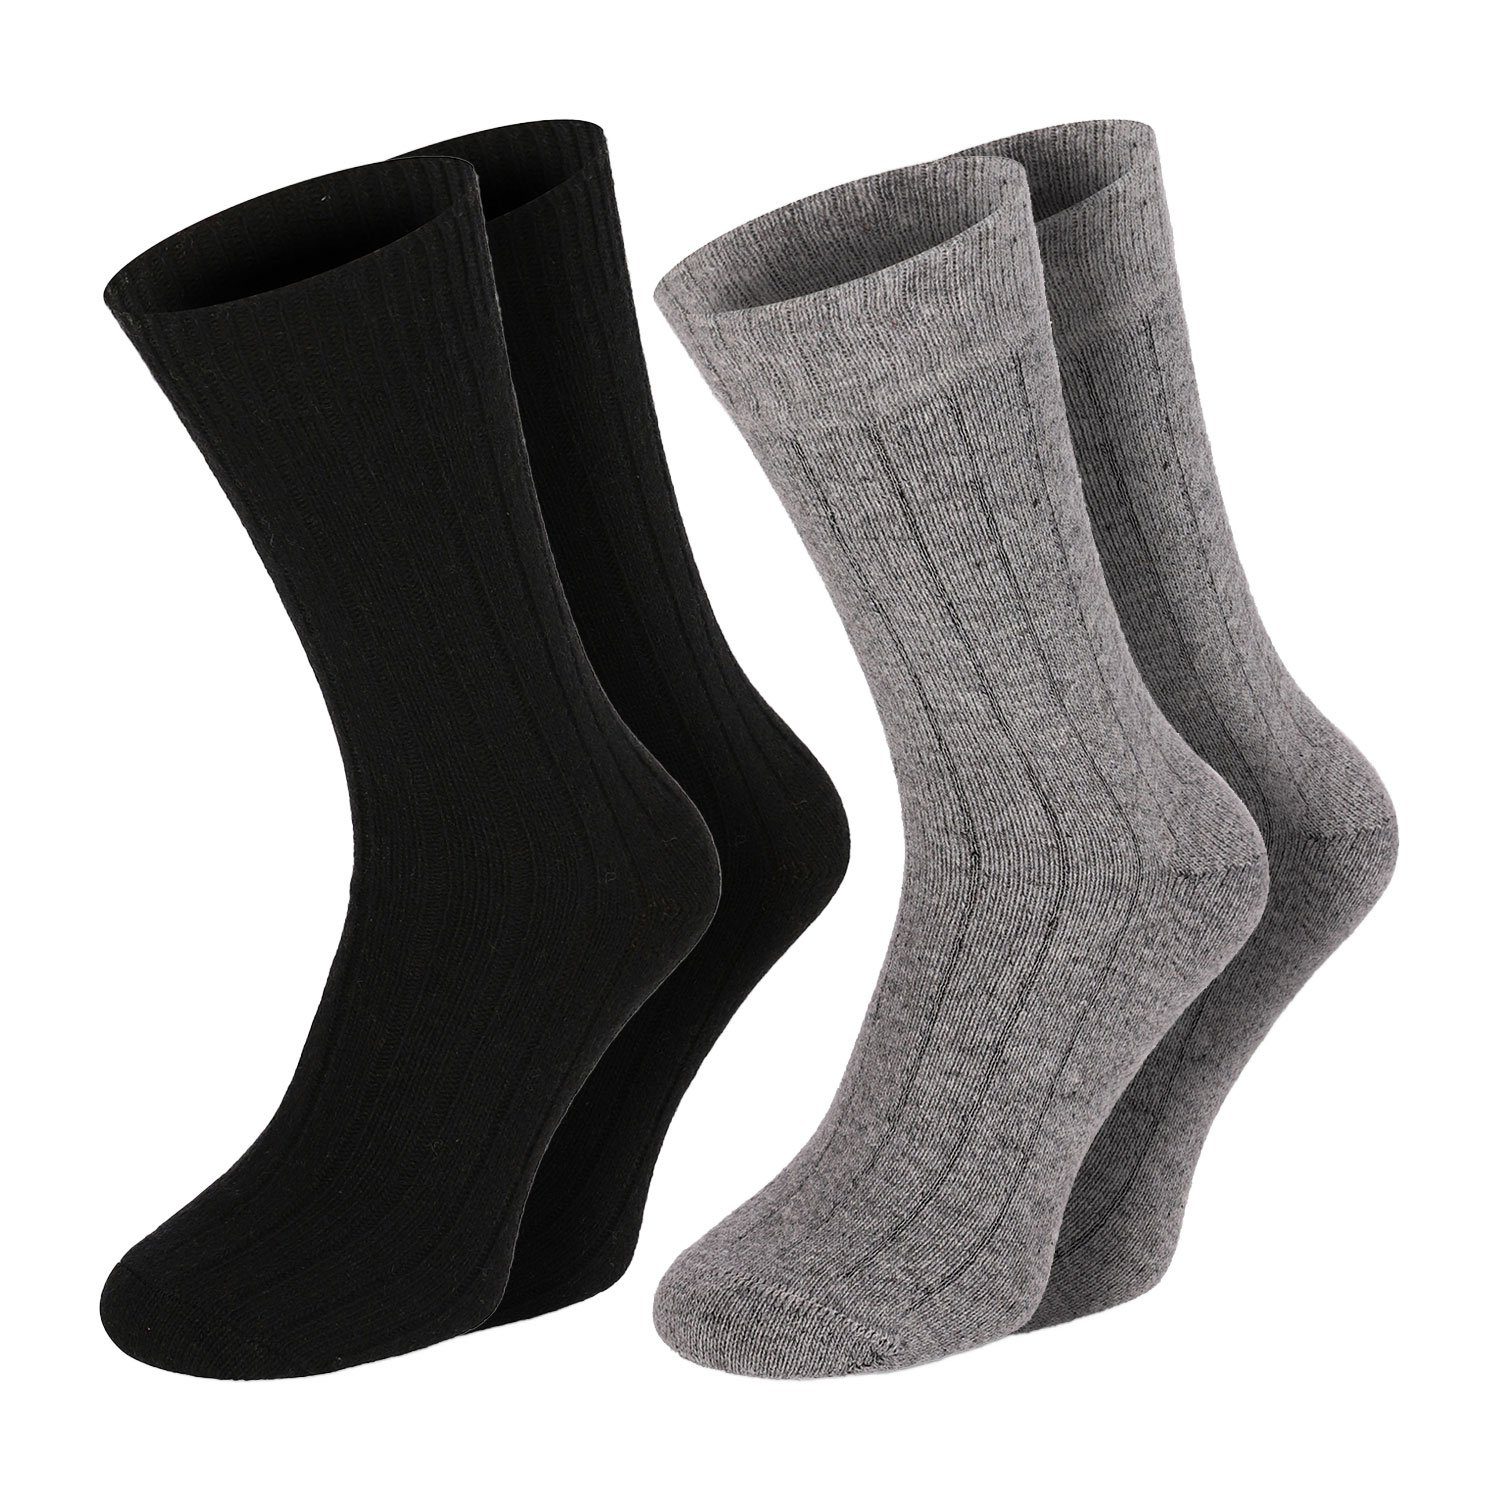 Soft Extra Super Warm Socken Winter Paar Strümpfe Damen 2 Herren Wolle Chili Merino Lifestyle